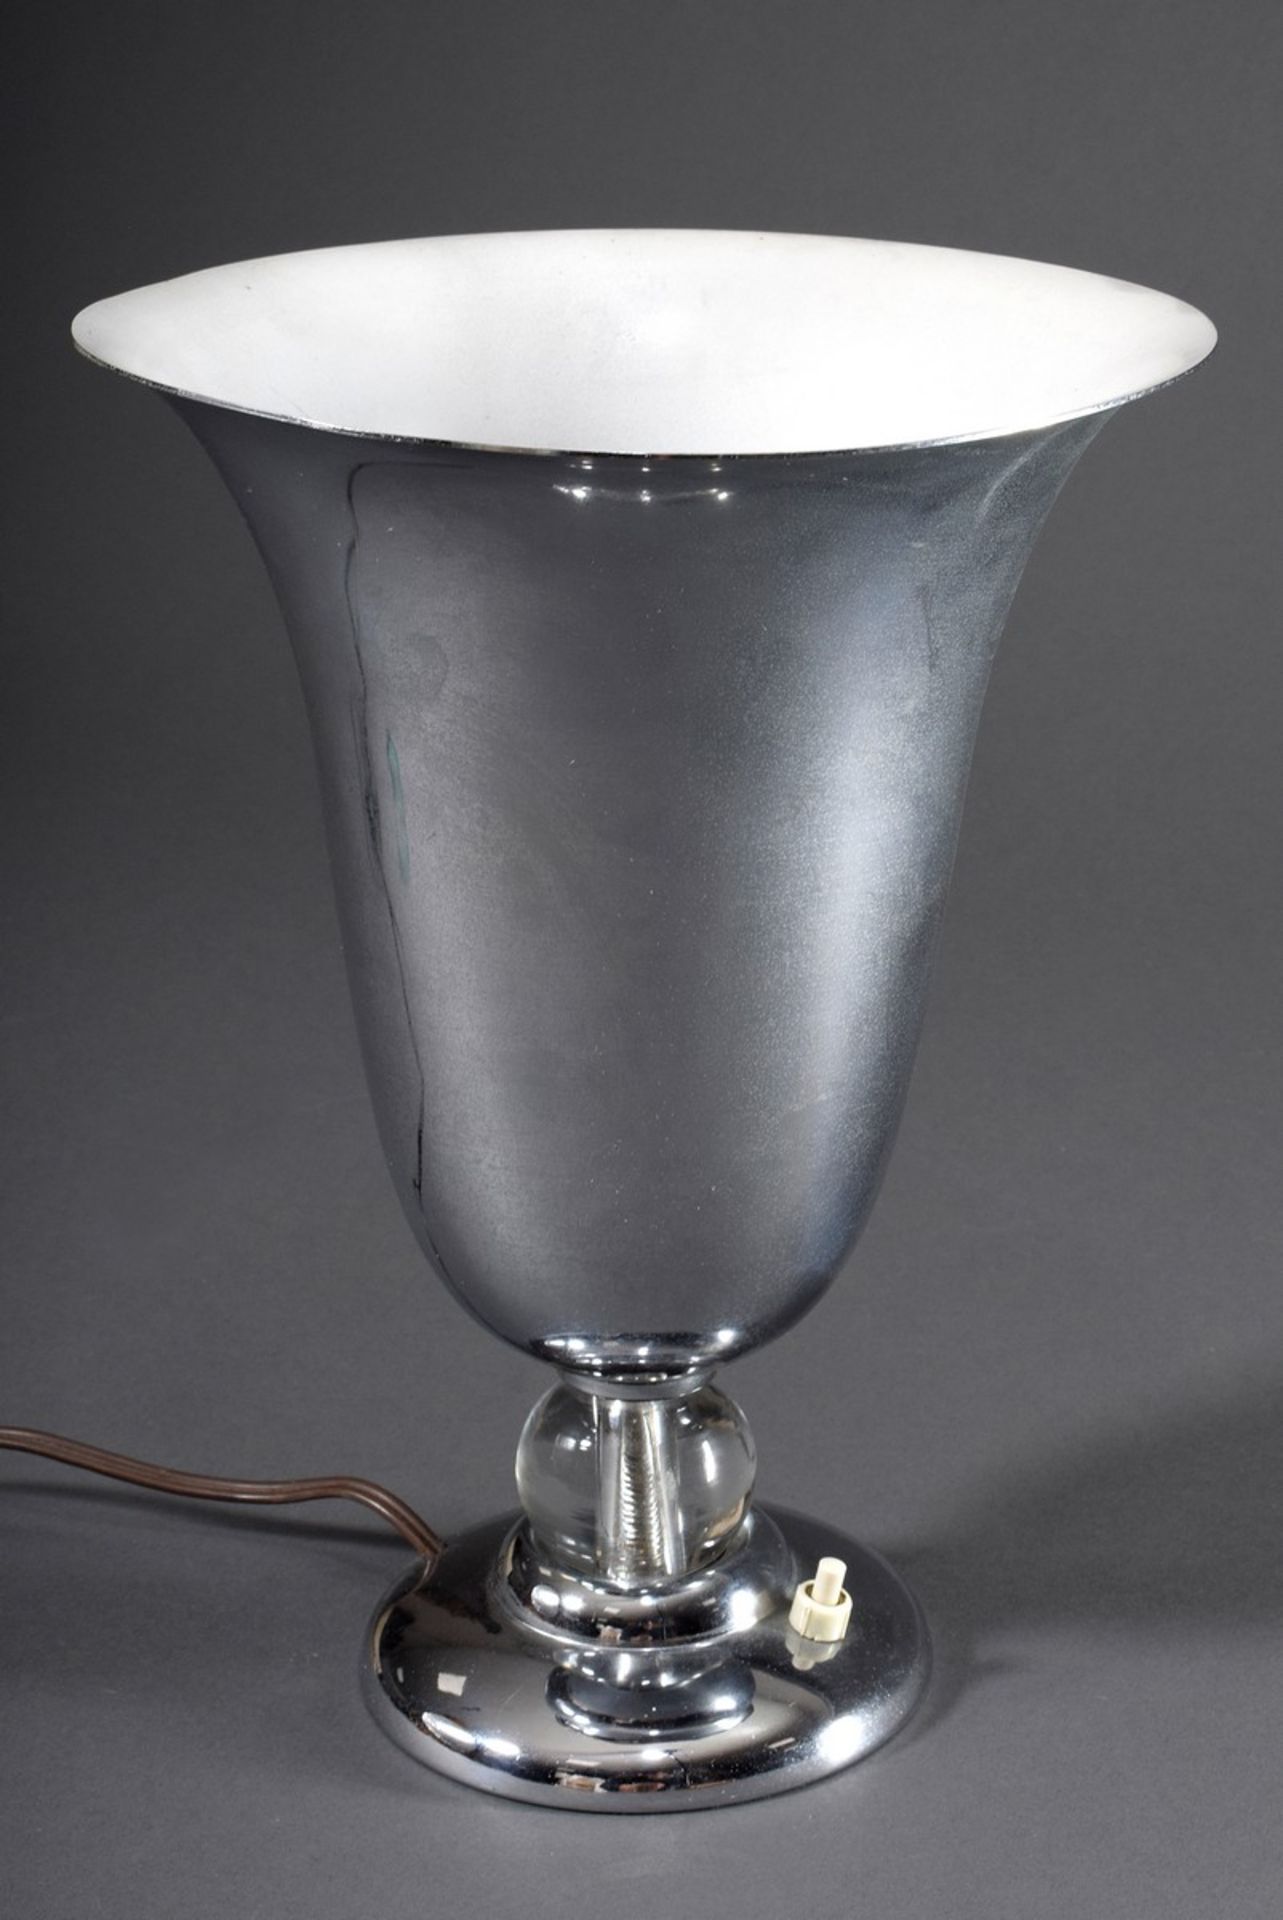 Art Deco Tischlampe mit trichterförmigem verchromtem Metall Schirm über Glas Kugel, um 1920/30, ele